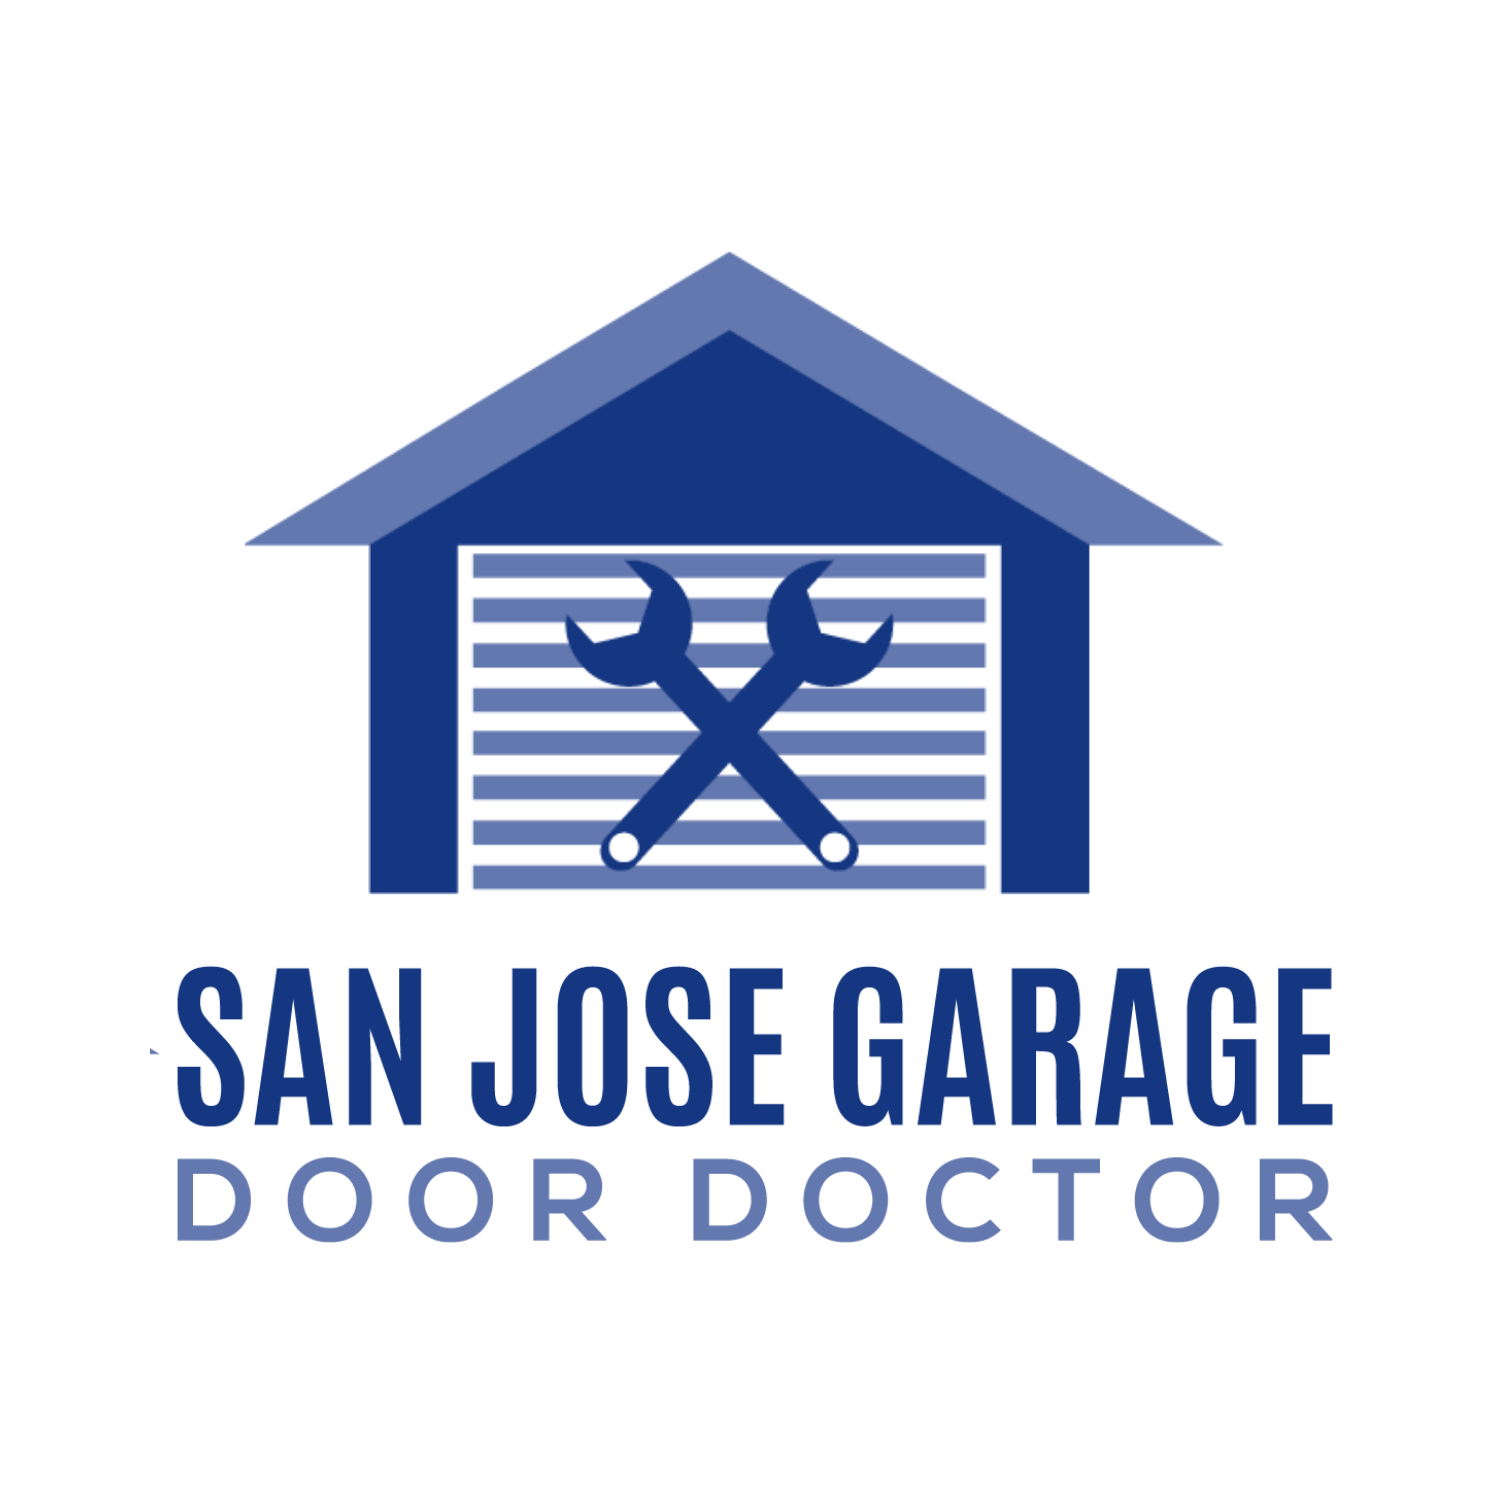 San Jose Garage Door Doctor